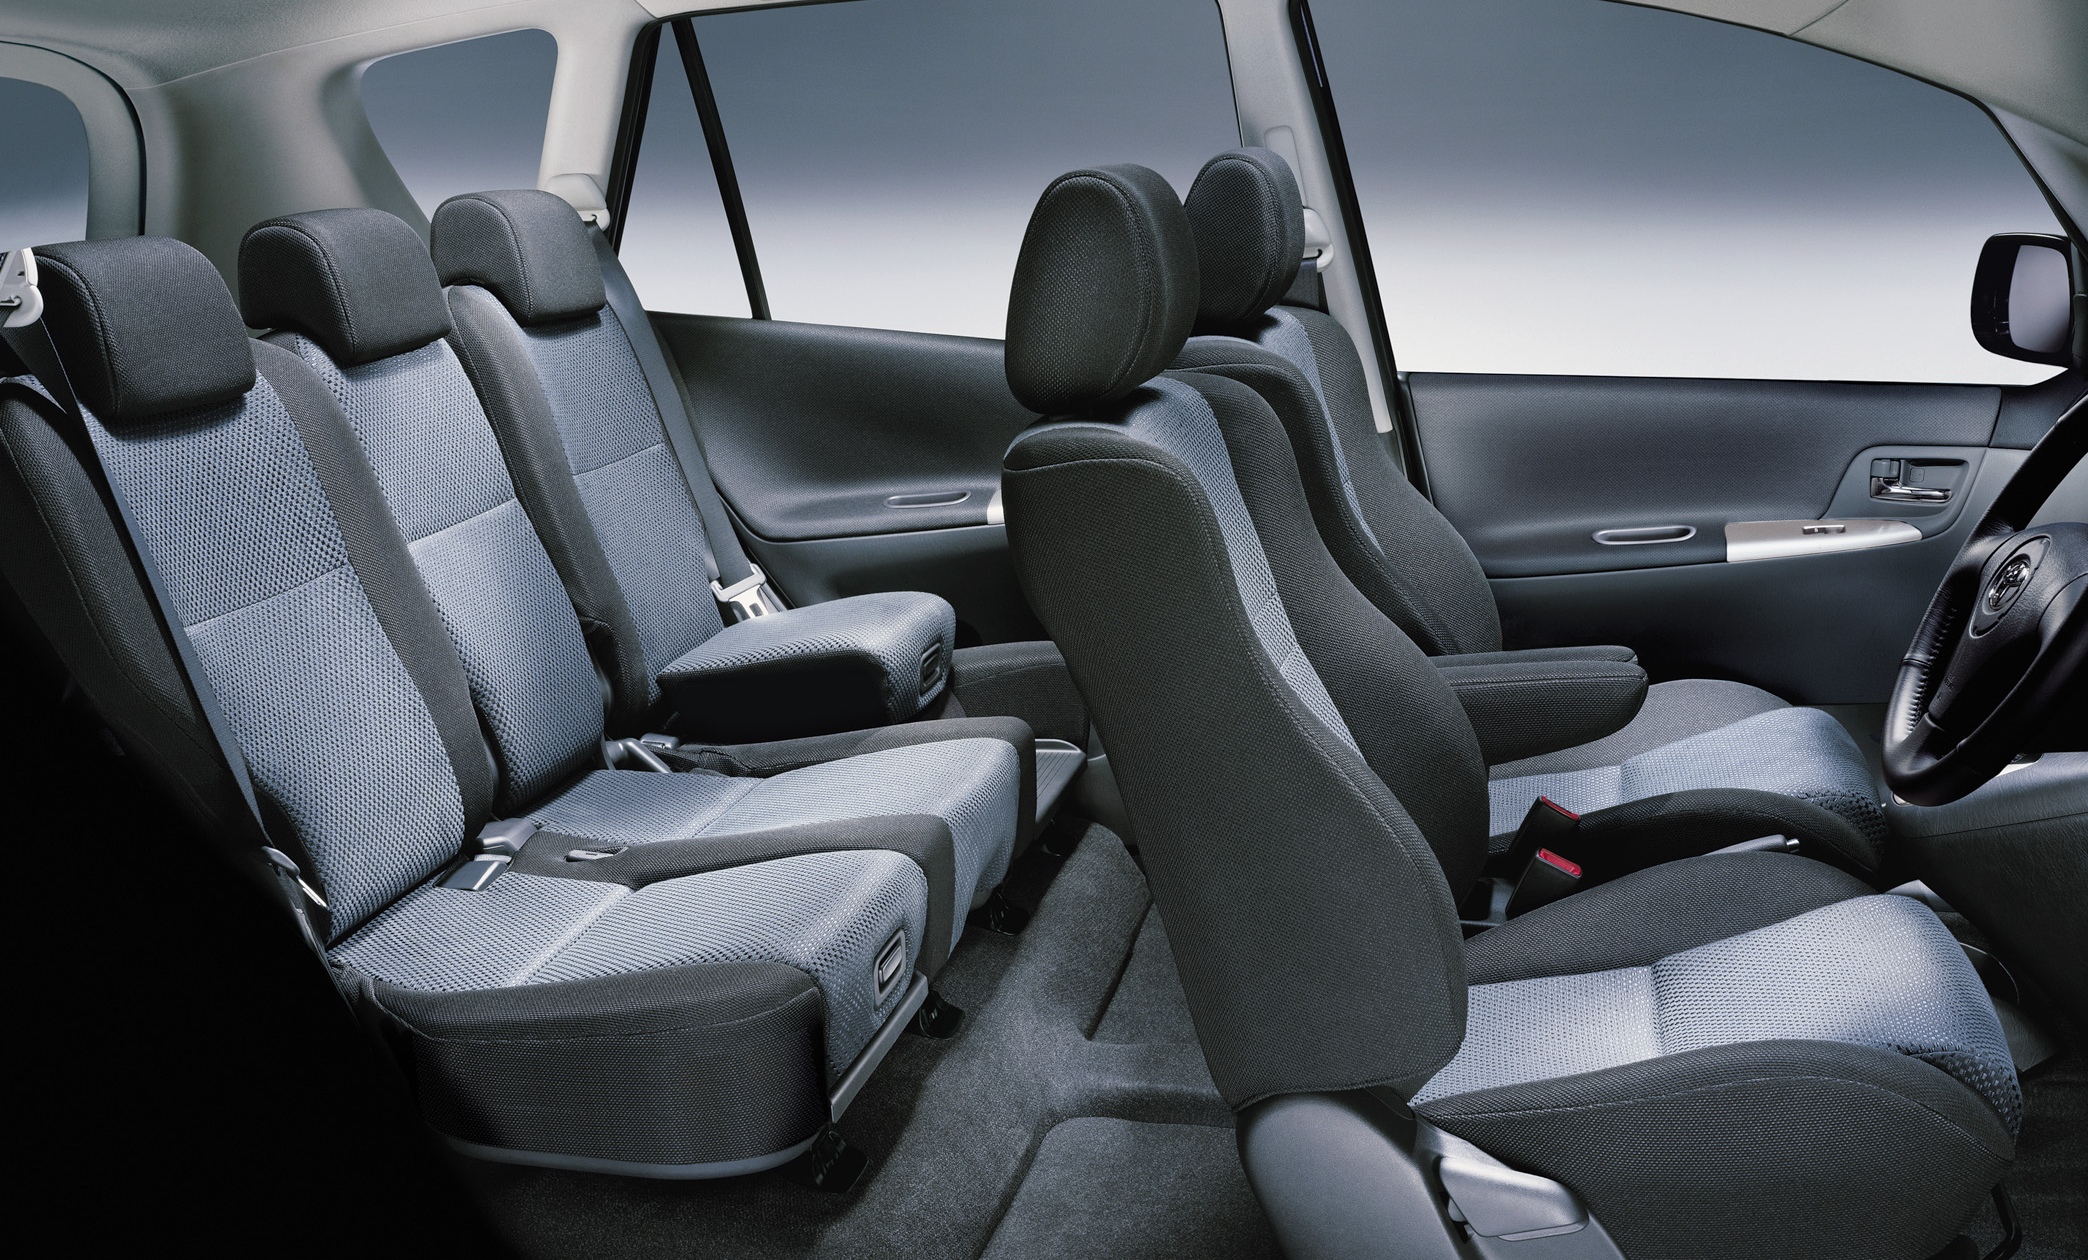 Toyota Corolla Verso interior - Seats